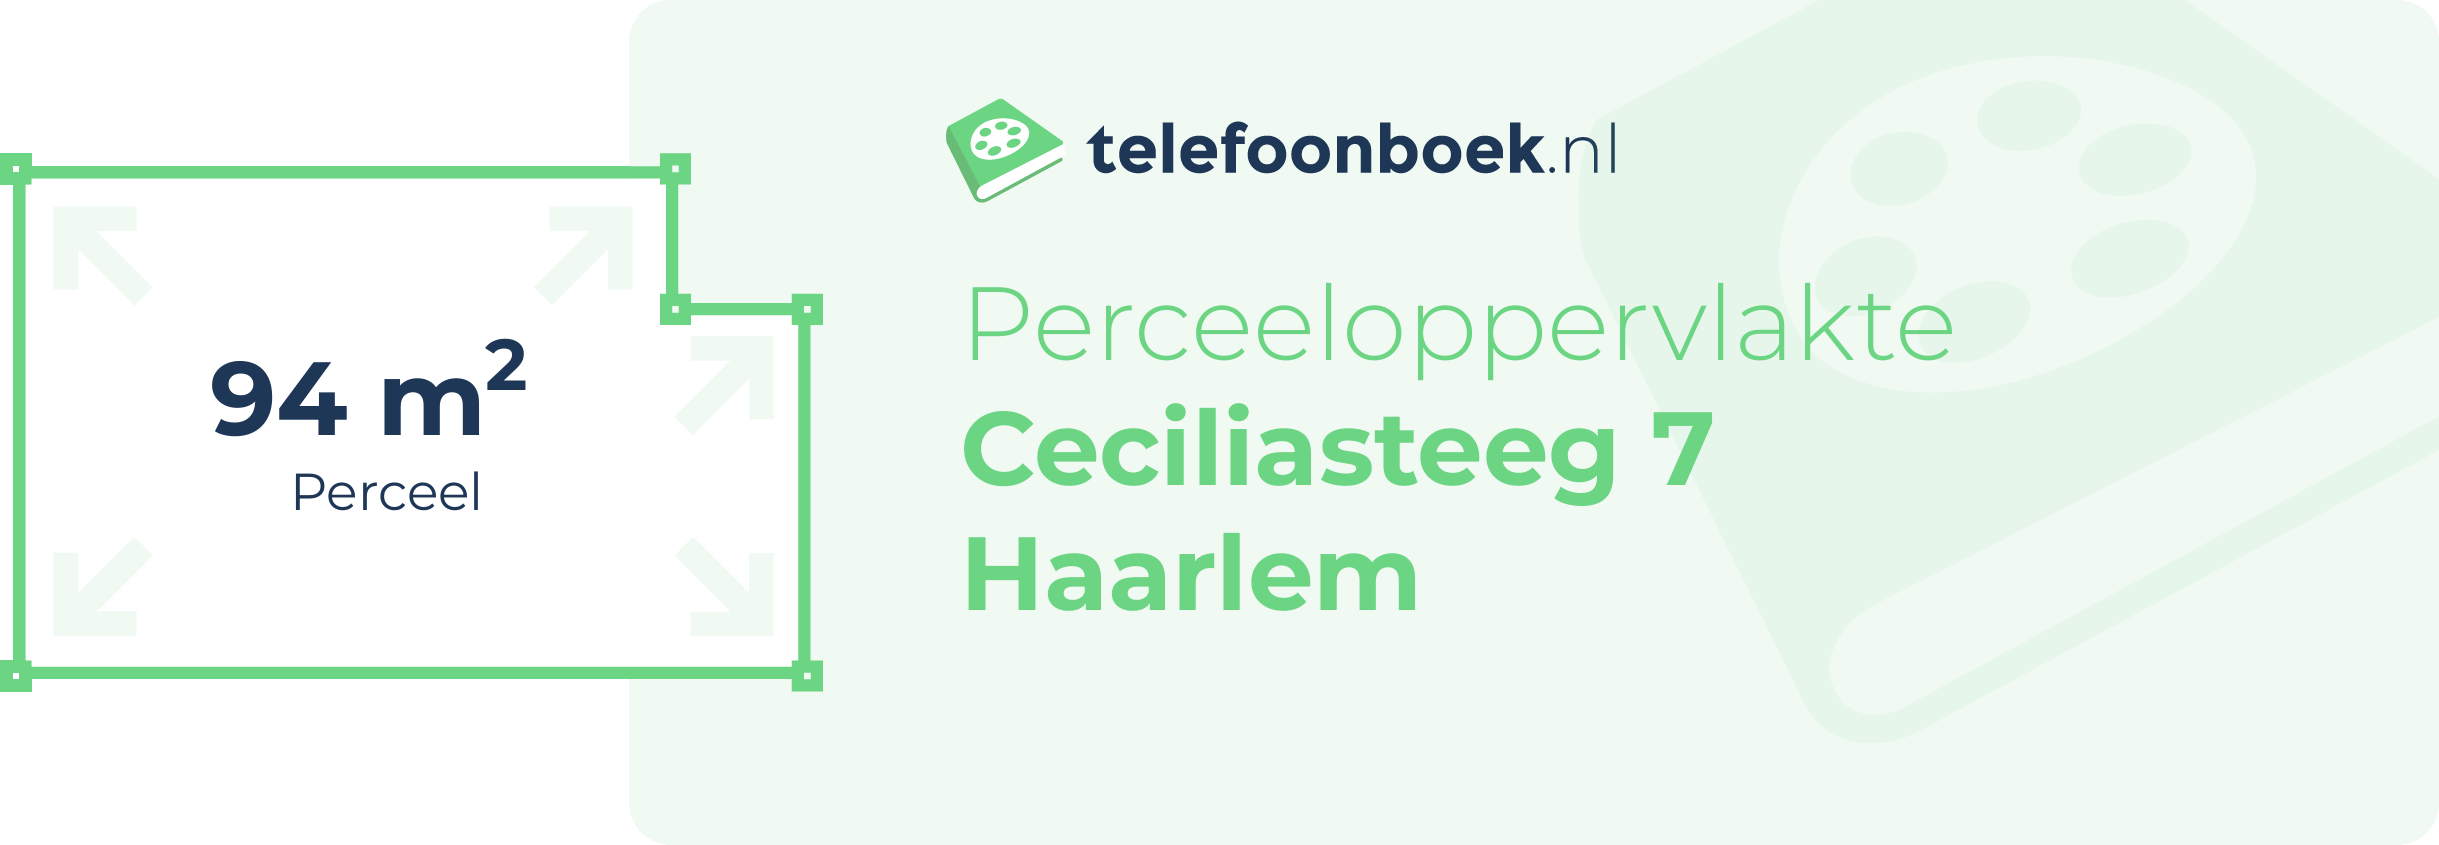 Perceeloppervlakte Ceciliasteeg 7 Haarlem